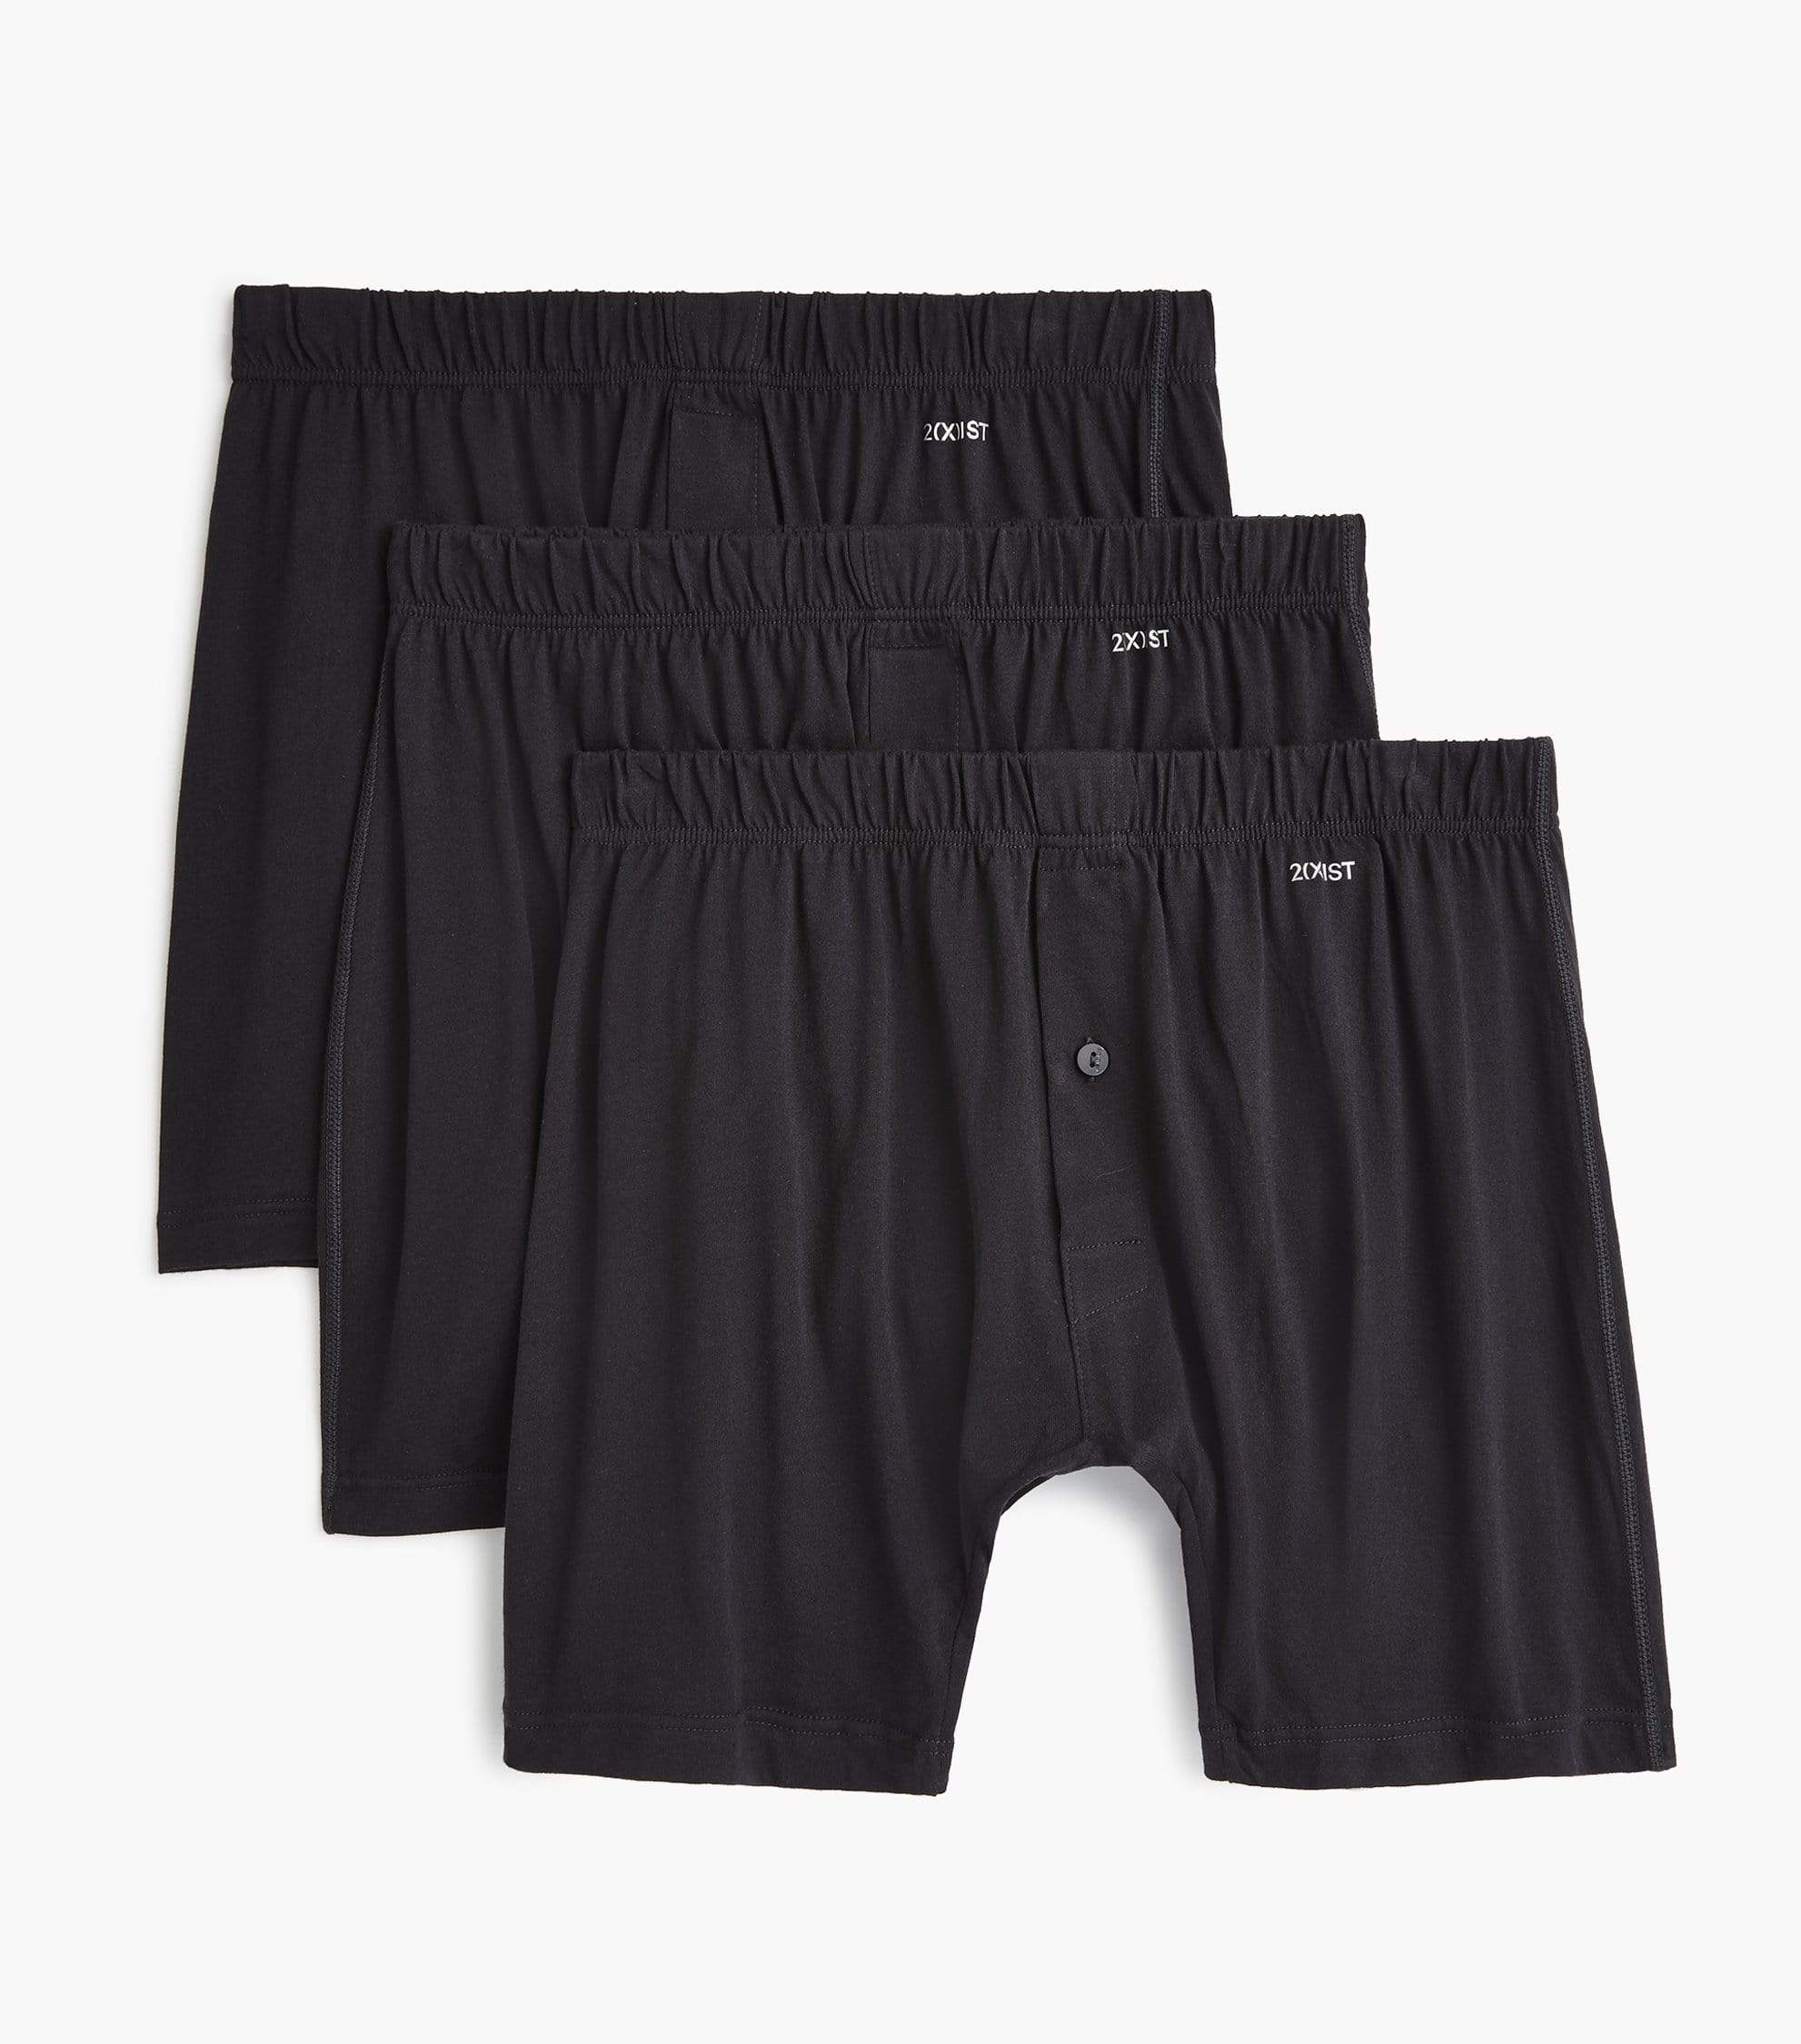 Premium Cotton Woven Boxer Shorts - 2 Pack